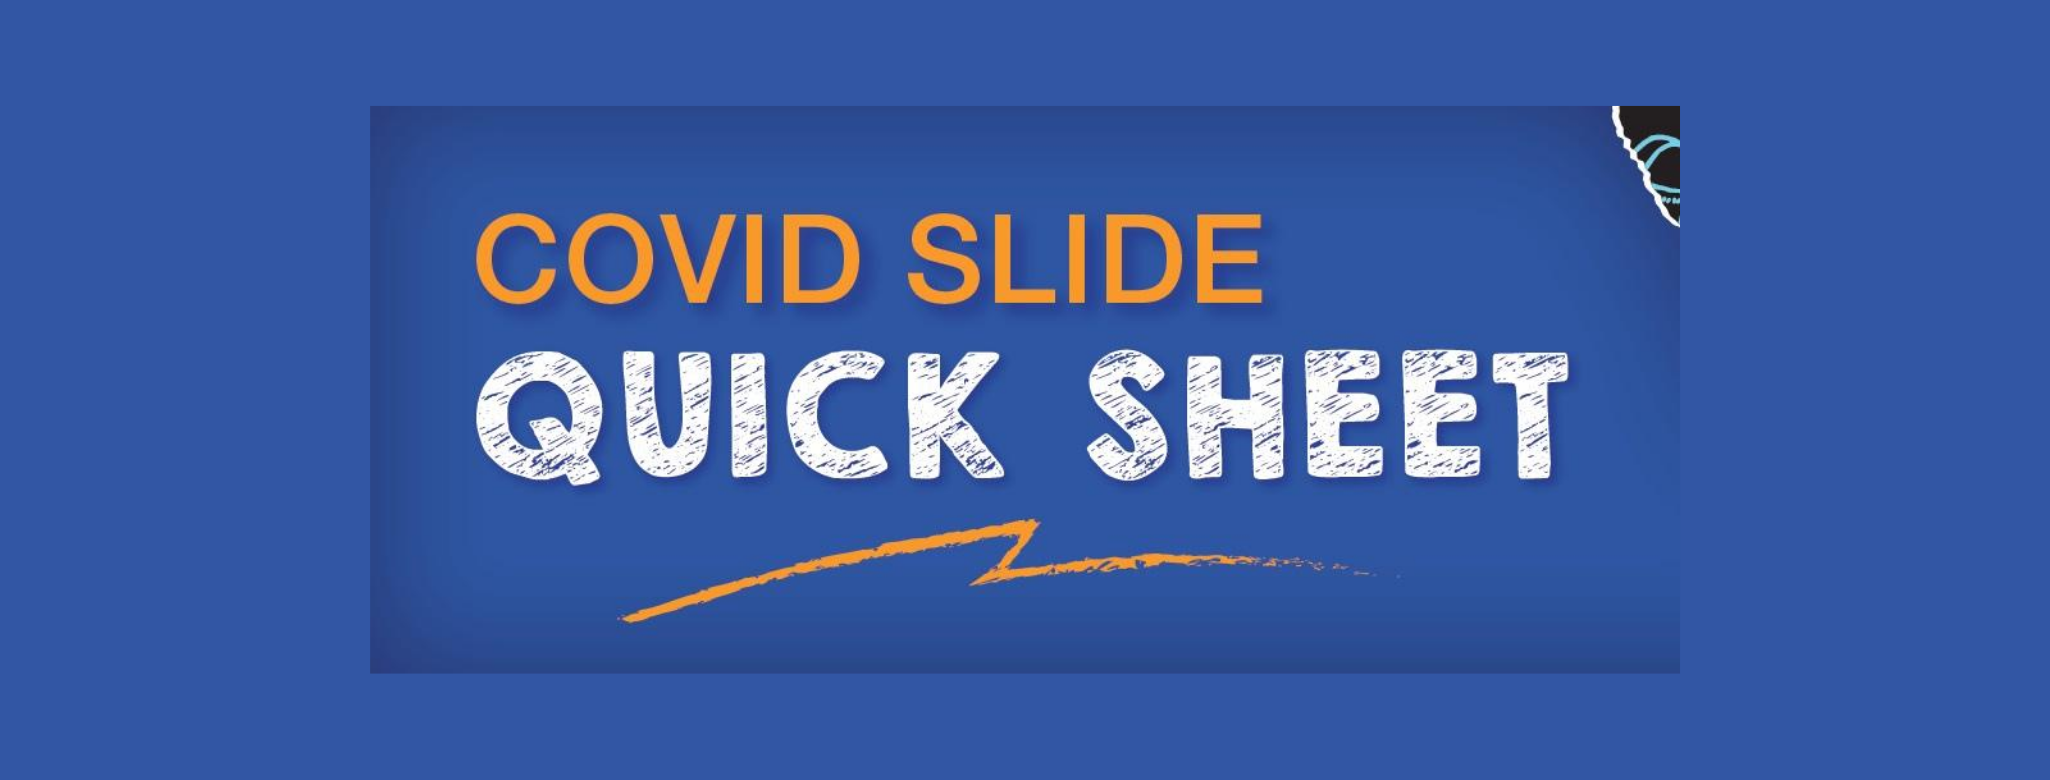 Image for COVID Slide QuickSheet – January 27, 2021